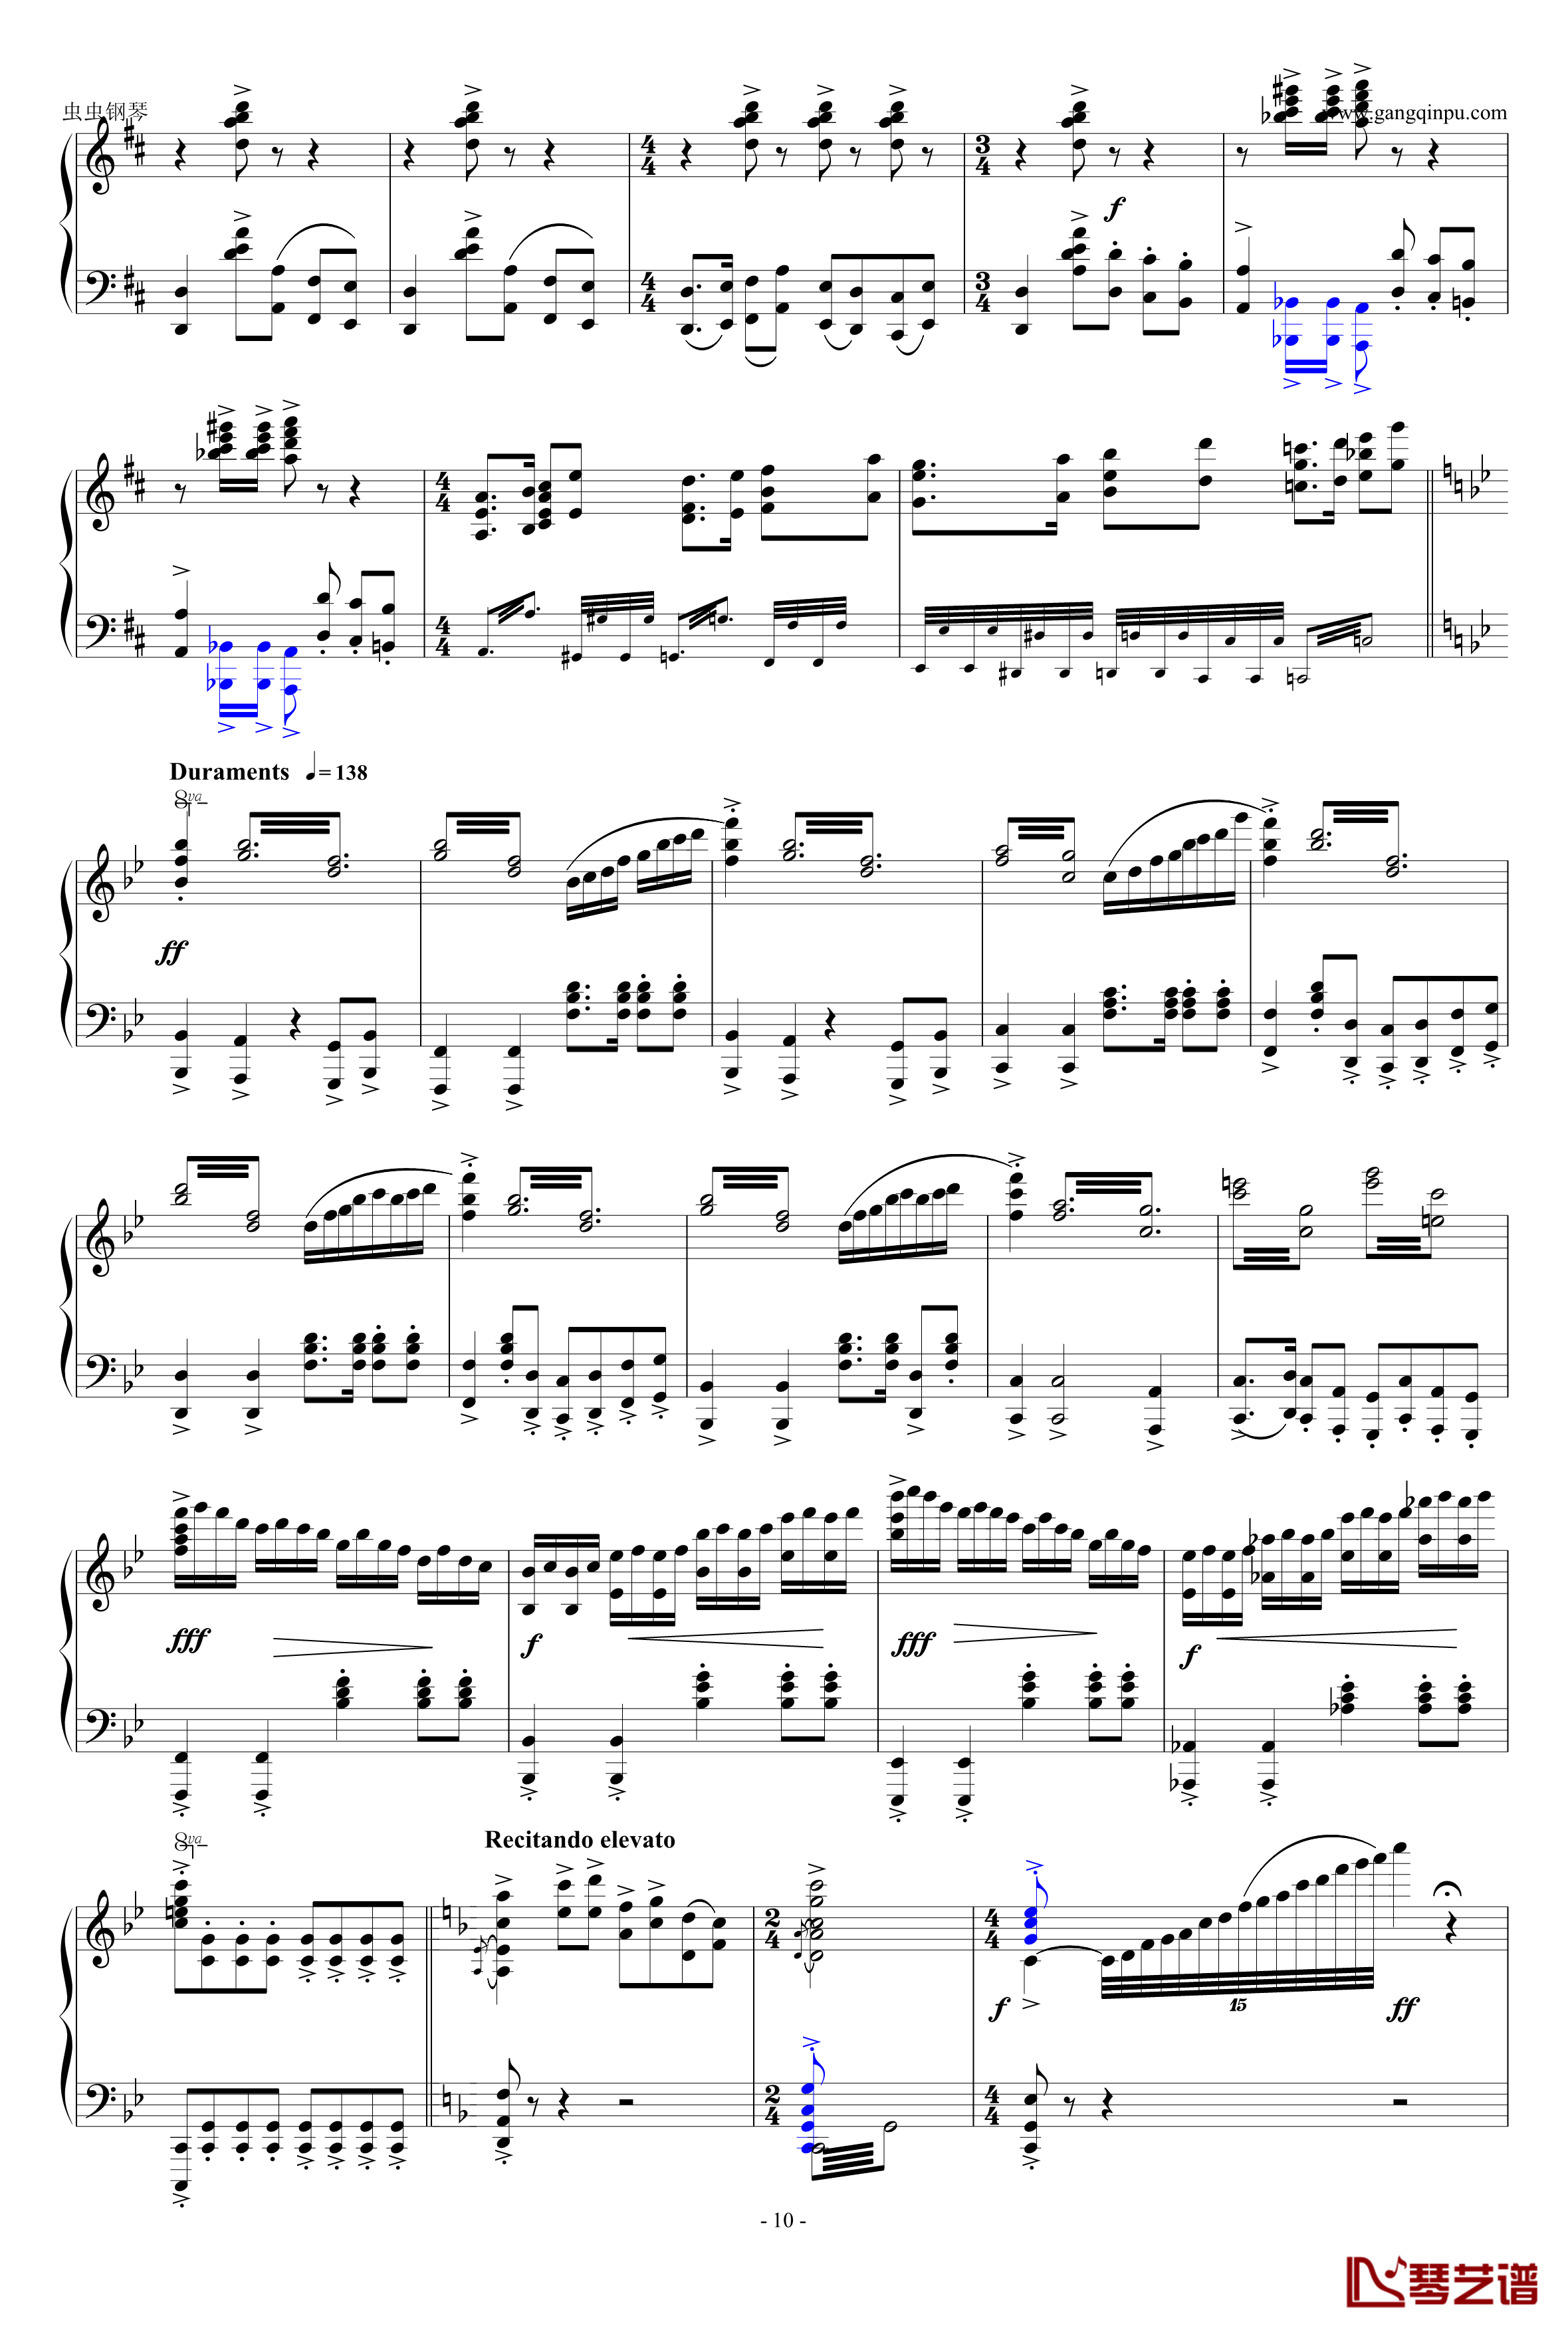 梁山伯与祝英台钢琴谱-完整版-钢琴独奏精品付视频参照-苗波10